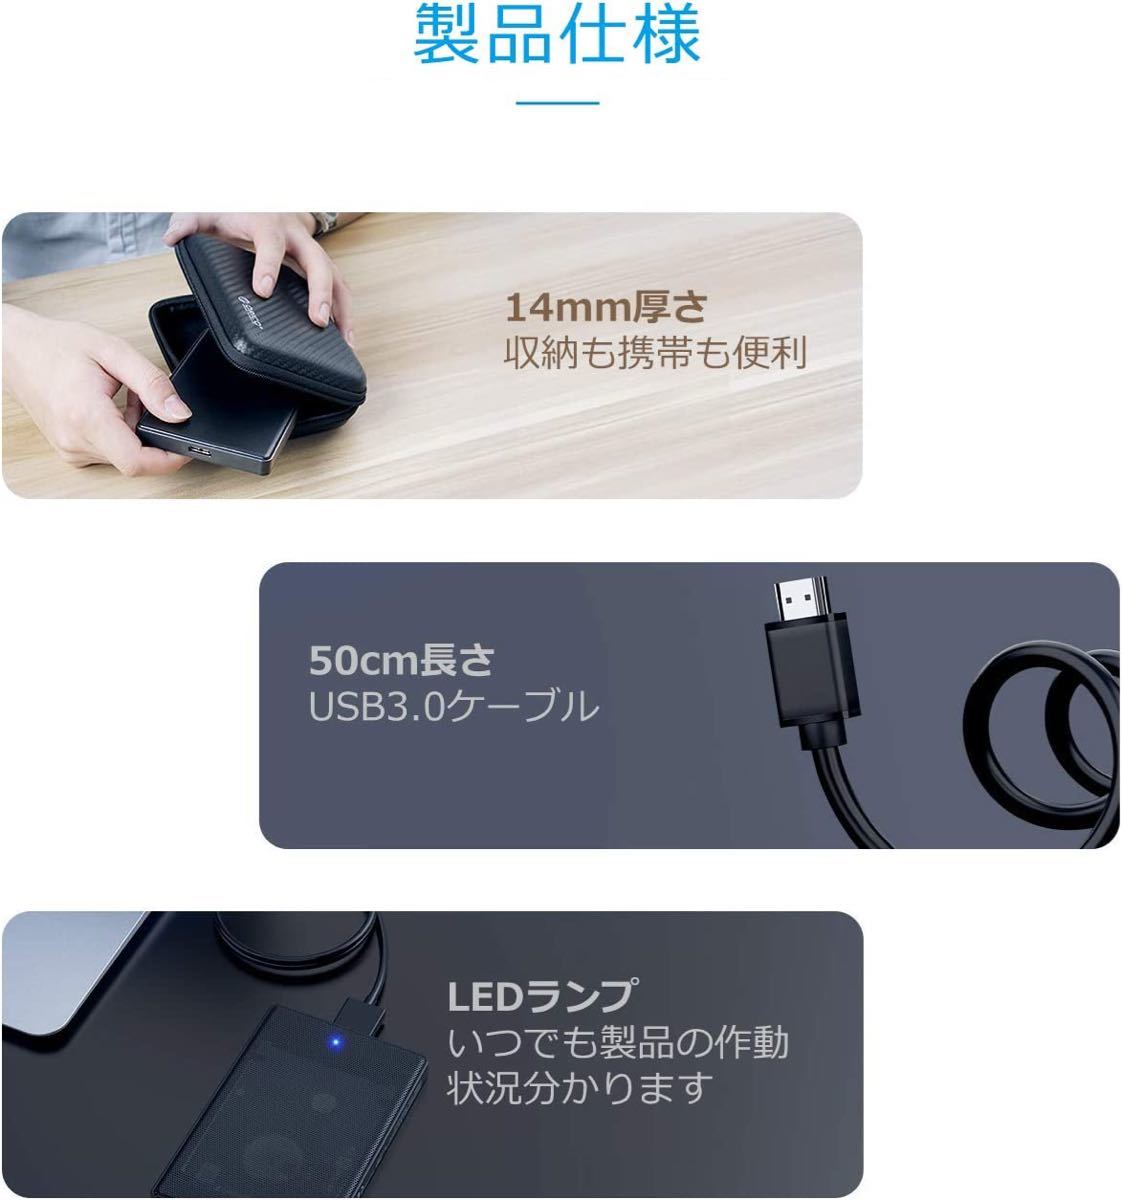 【高放熱性】【高速転送】1TB SSHD 外付けハードディスク USB3.0 ハイブリッド 1000GB 新品 ケース